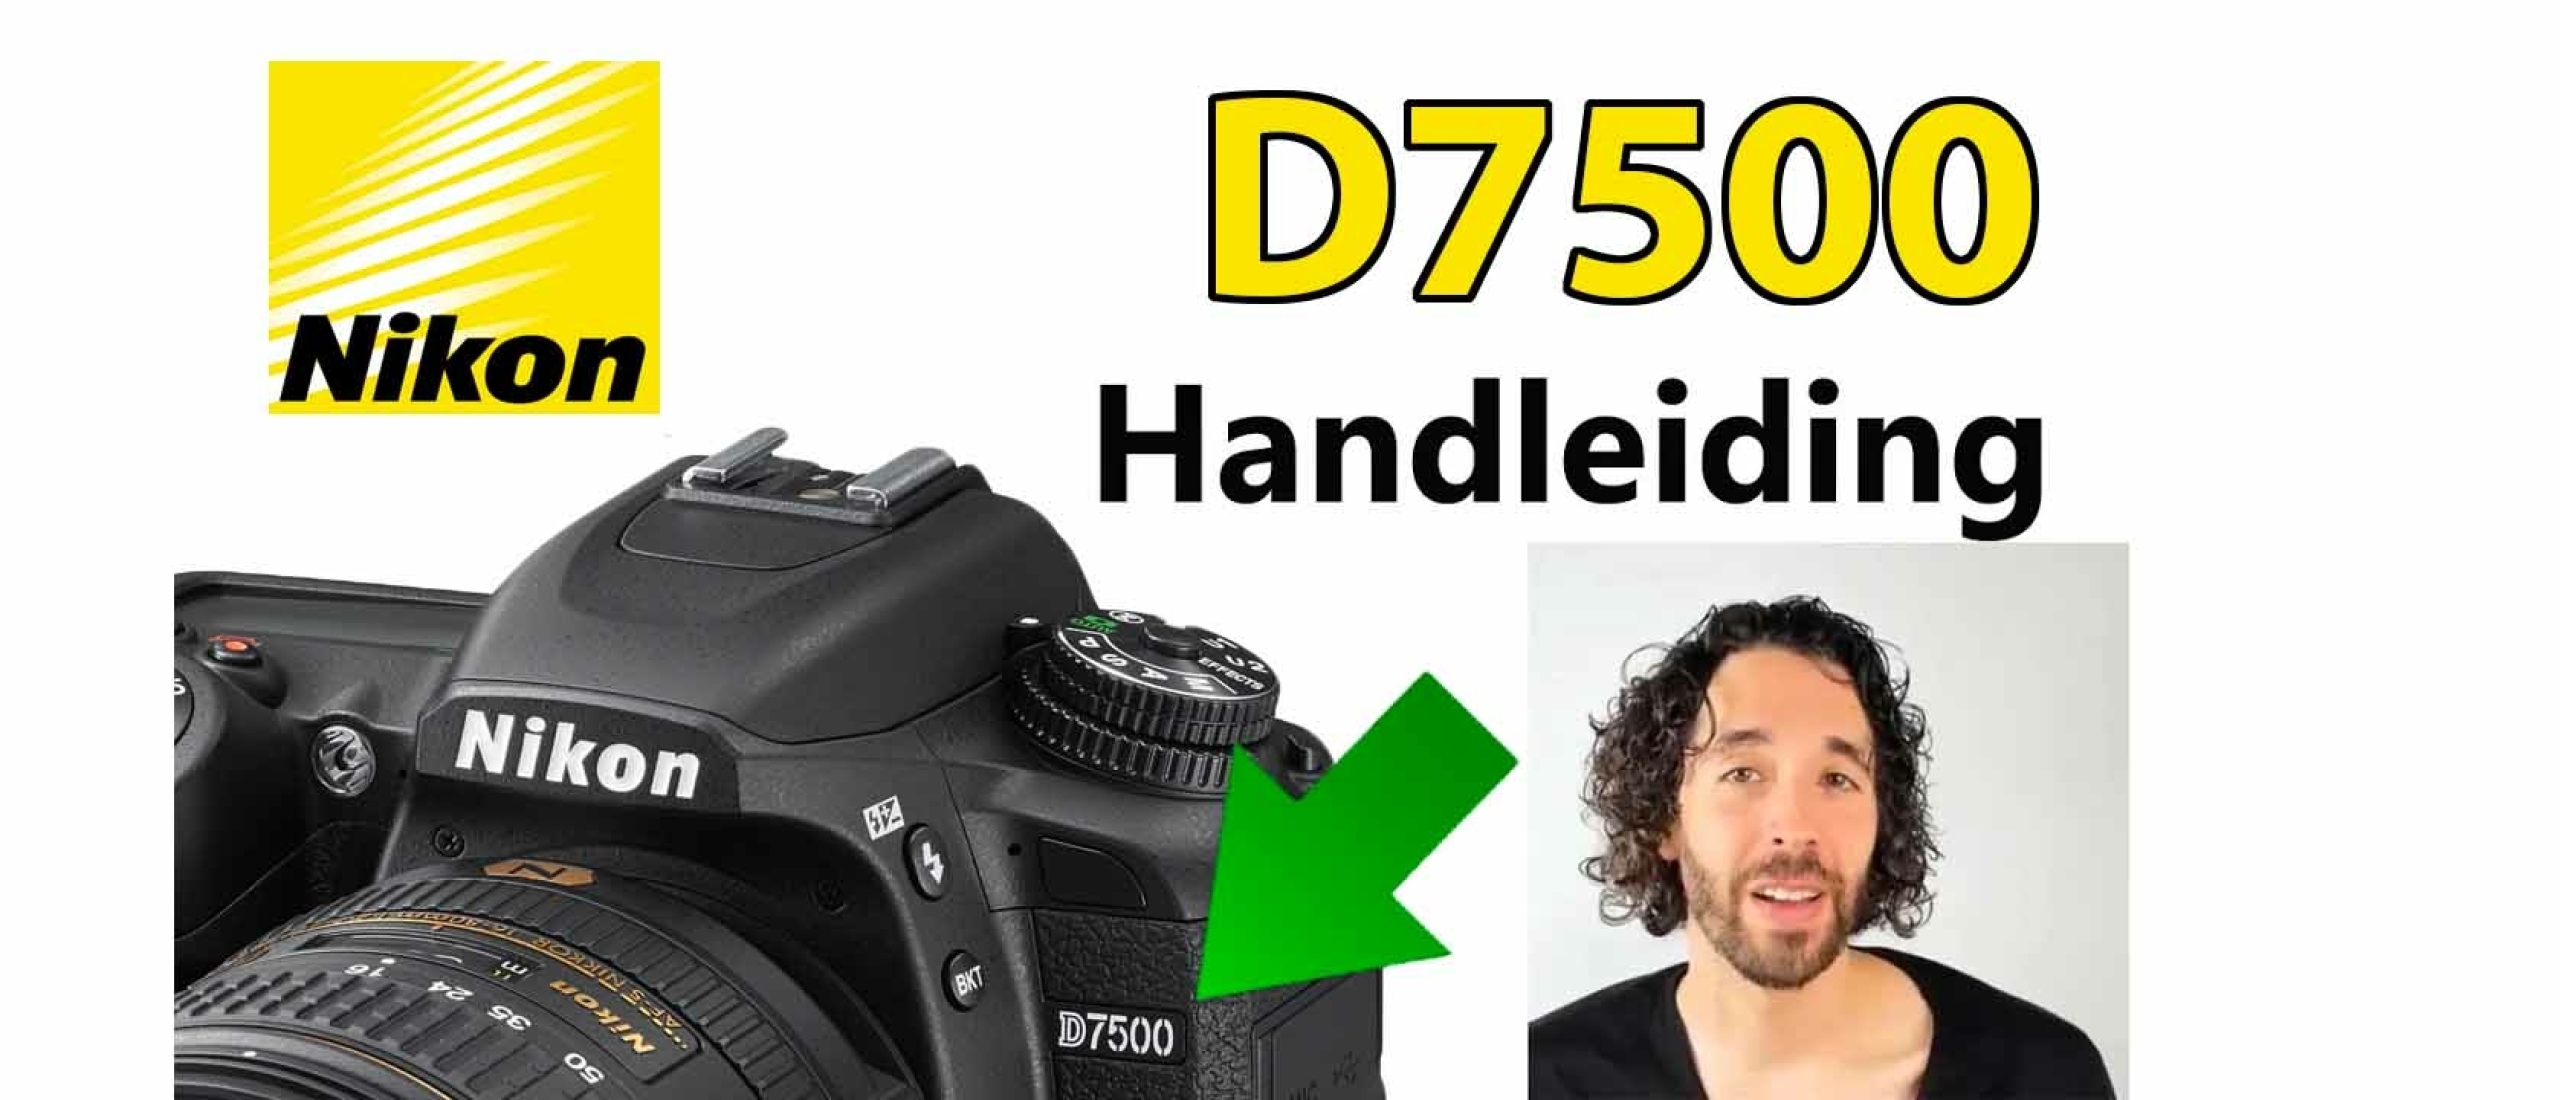 Nikon D7500 Handleiding Video: Menu, Functies, Knoppen & Instellingen uitgelegd